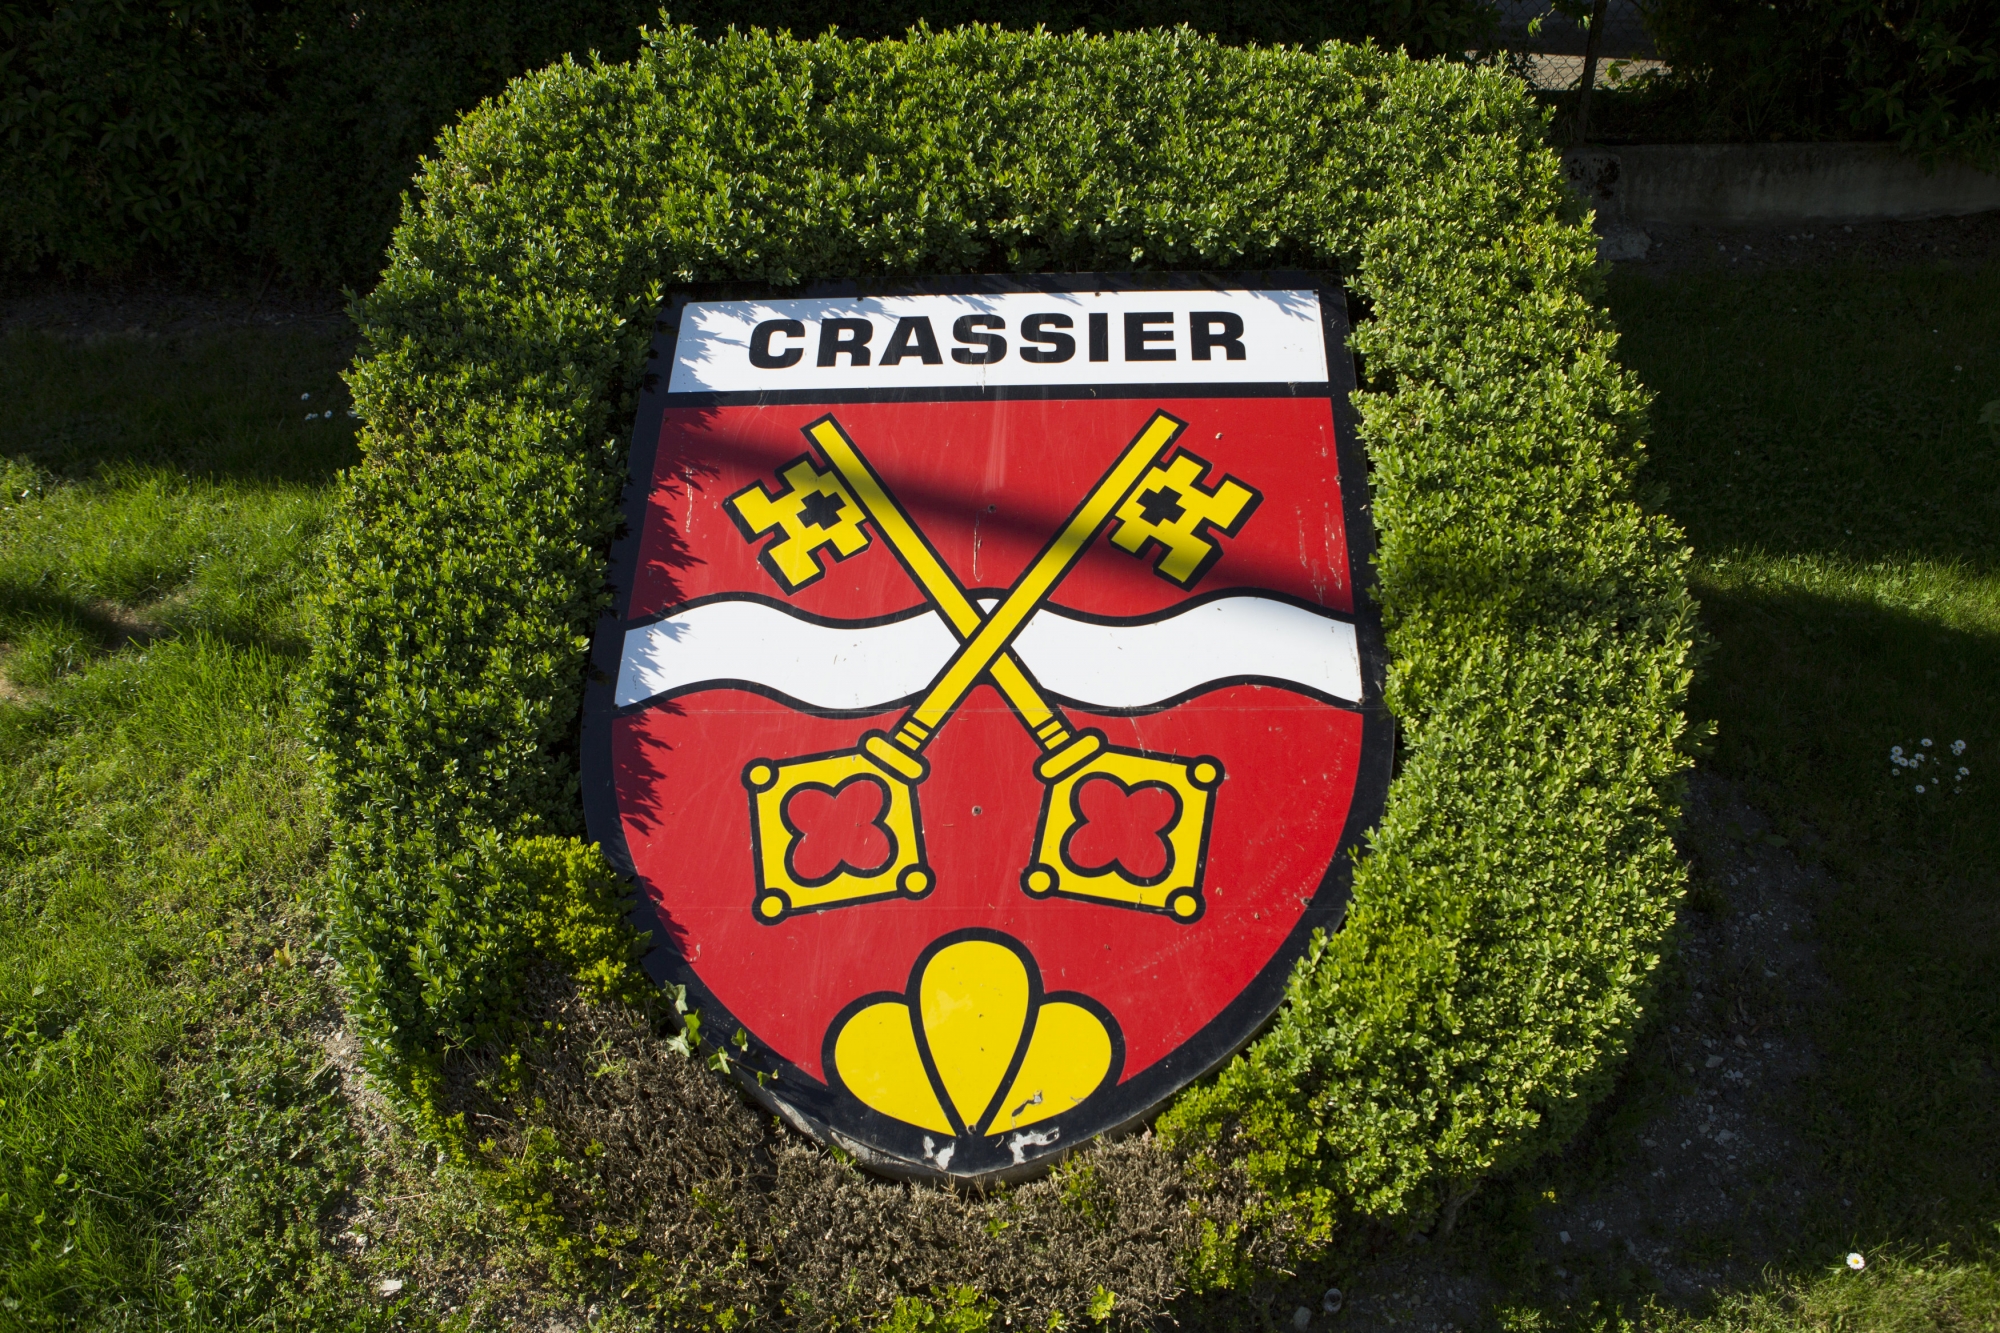 La commune de Crassier maintient son taux fiscal à 64 centimes par franc versé à l'Etat.